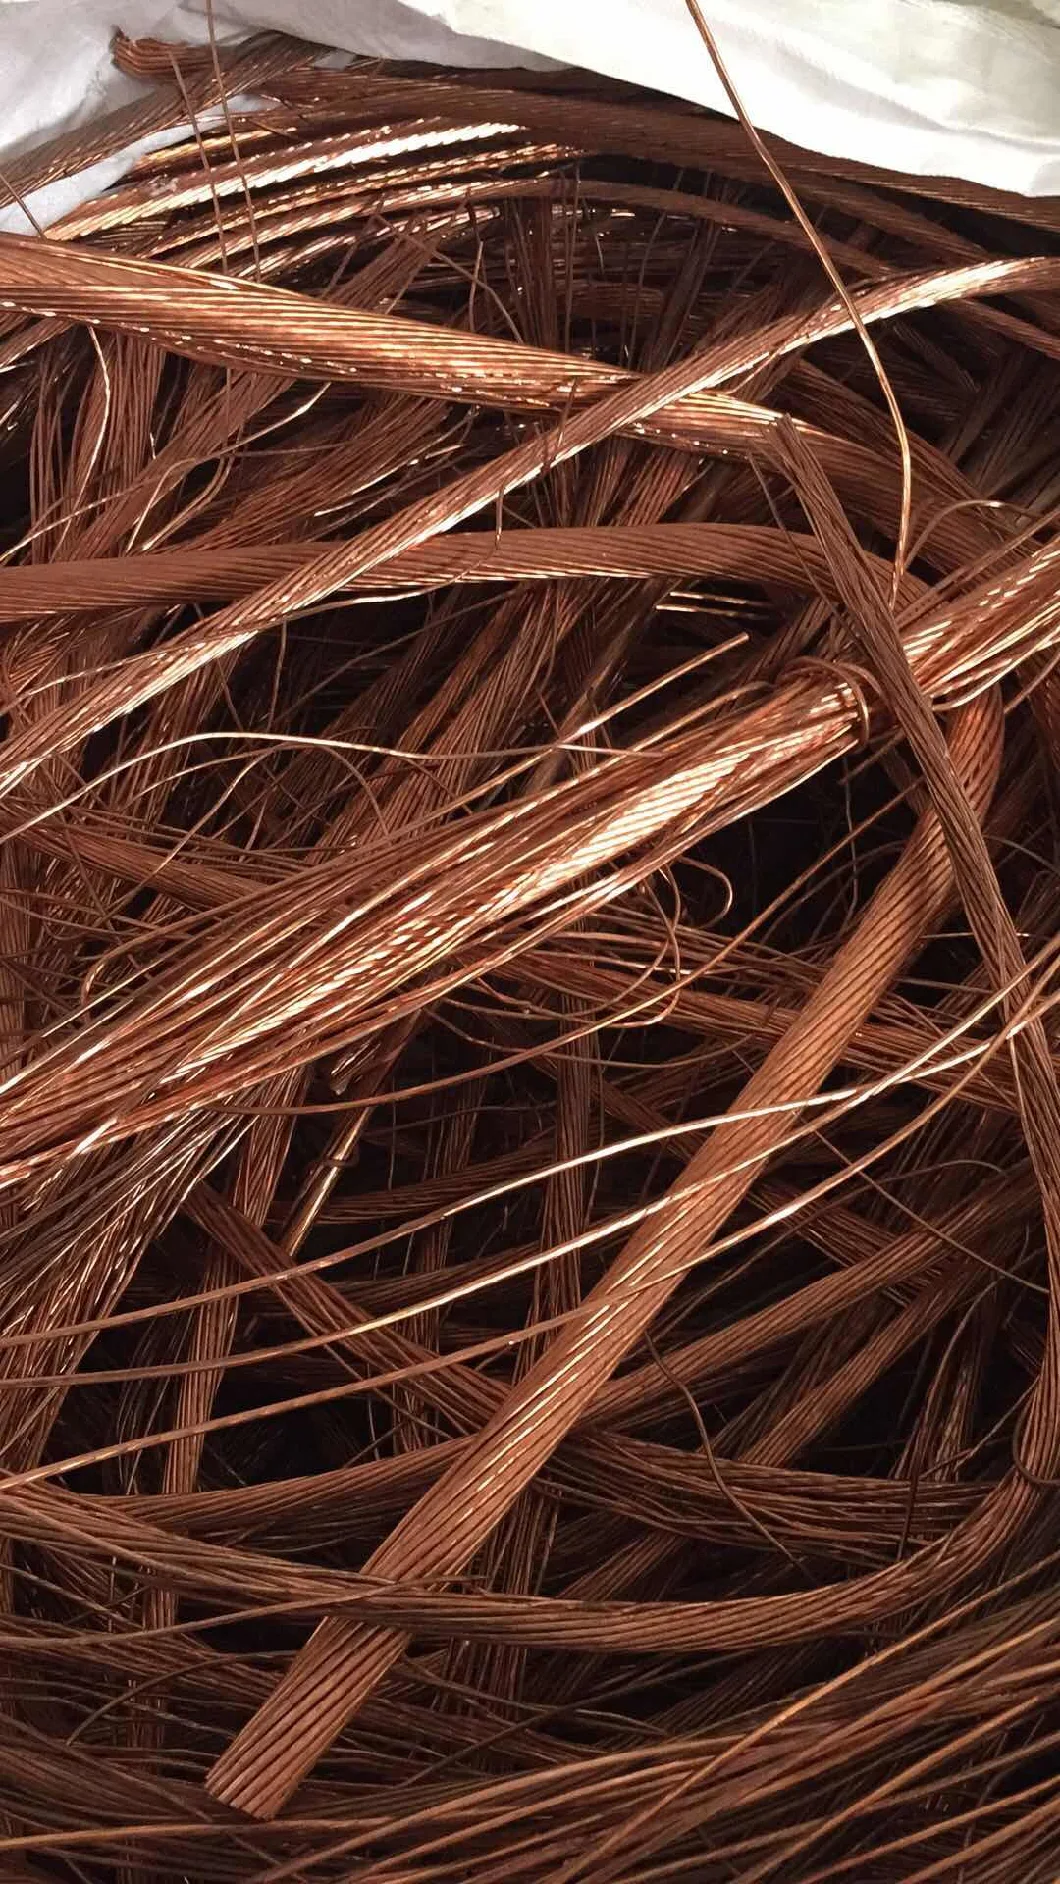 Copper Wire Scraps 99% Millbery Scraps Copper Wire Metal Scrap